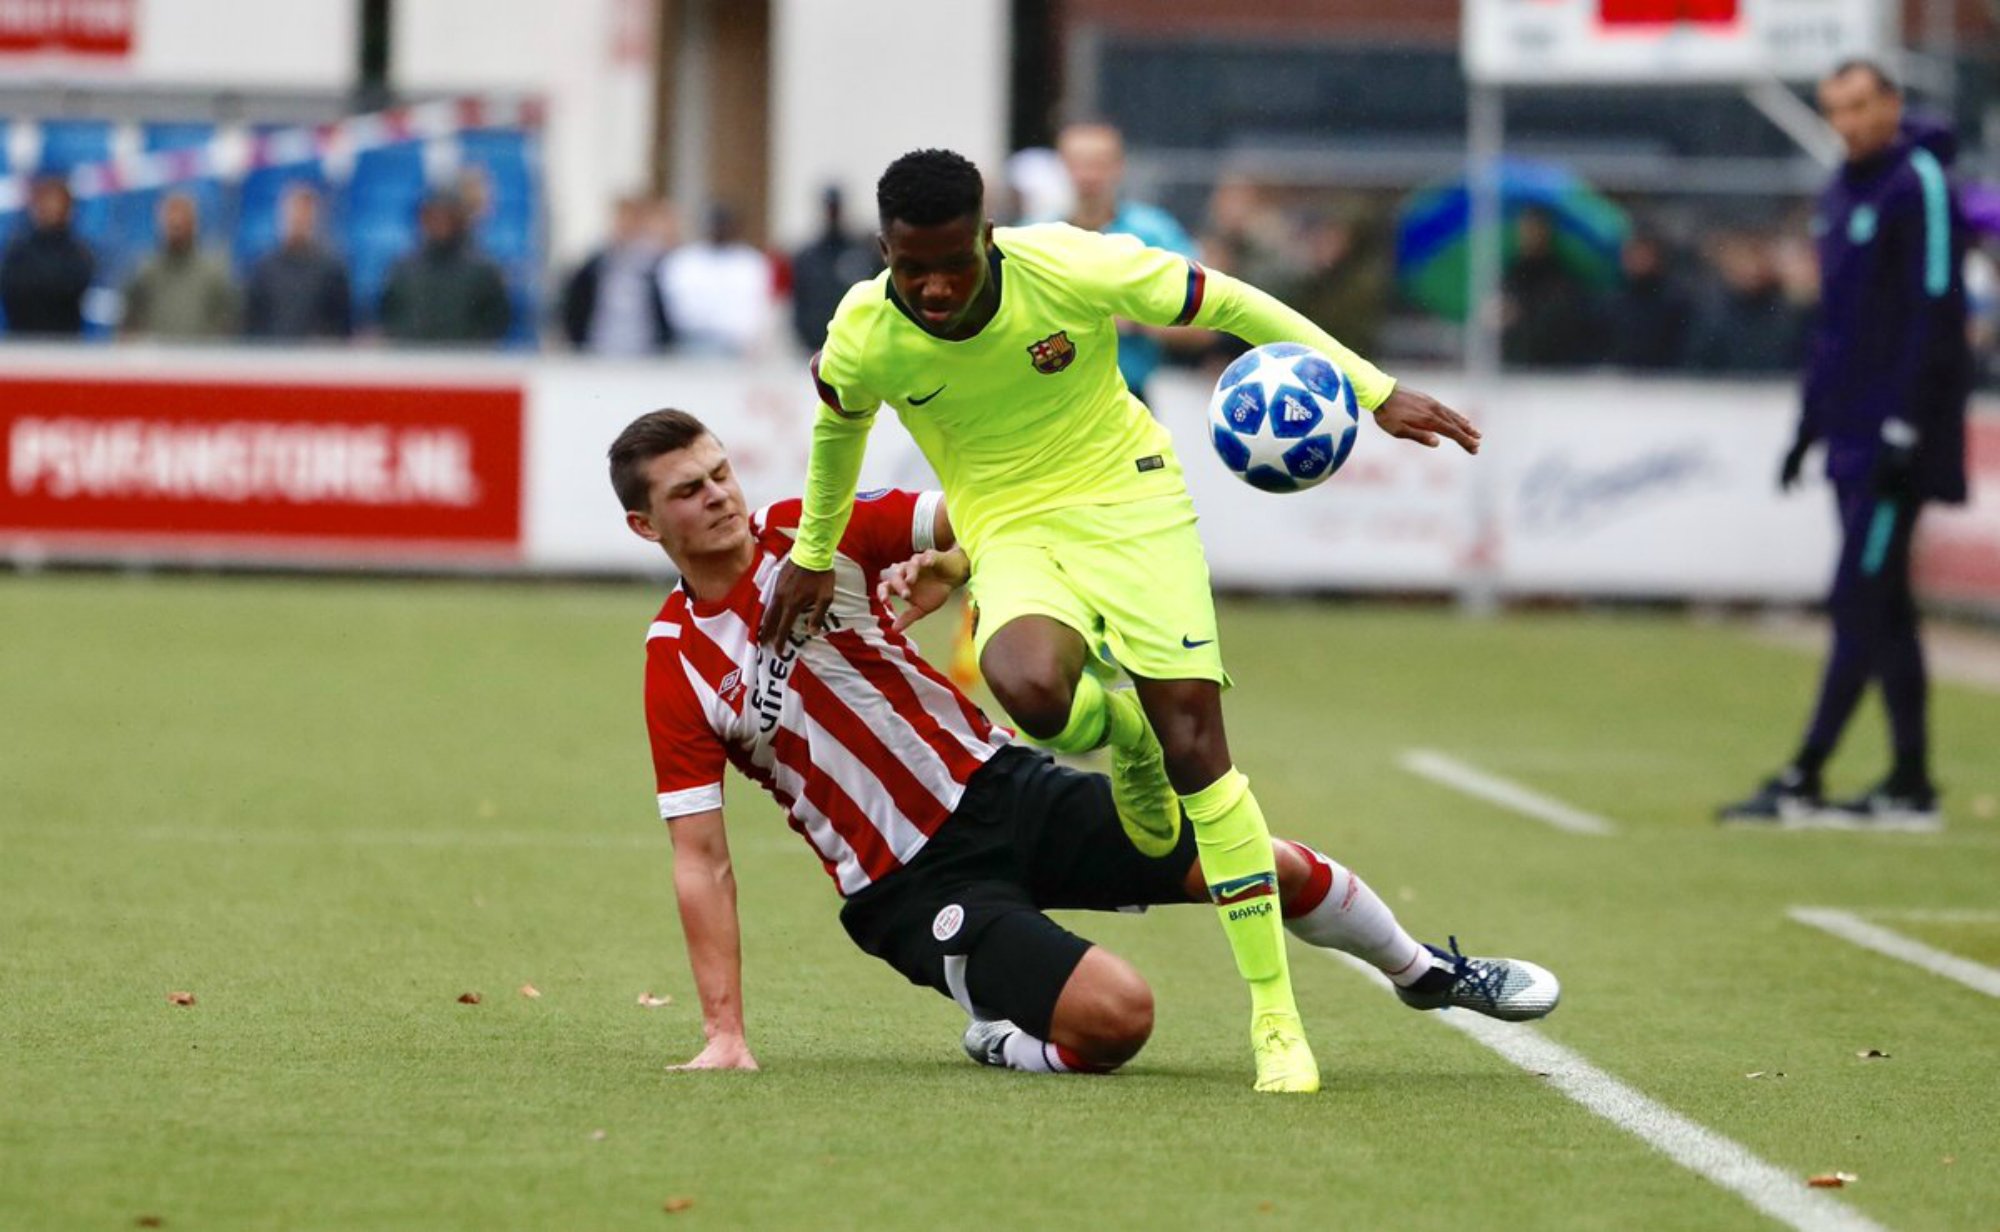 El Barça juvenil empata a Eindhoven i serà als vuitens de la Youth League (1-1)